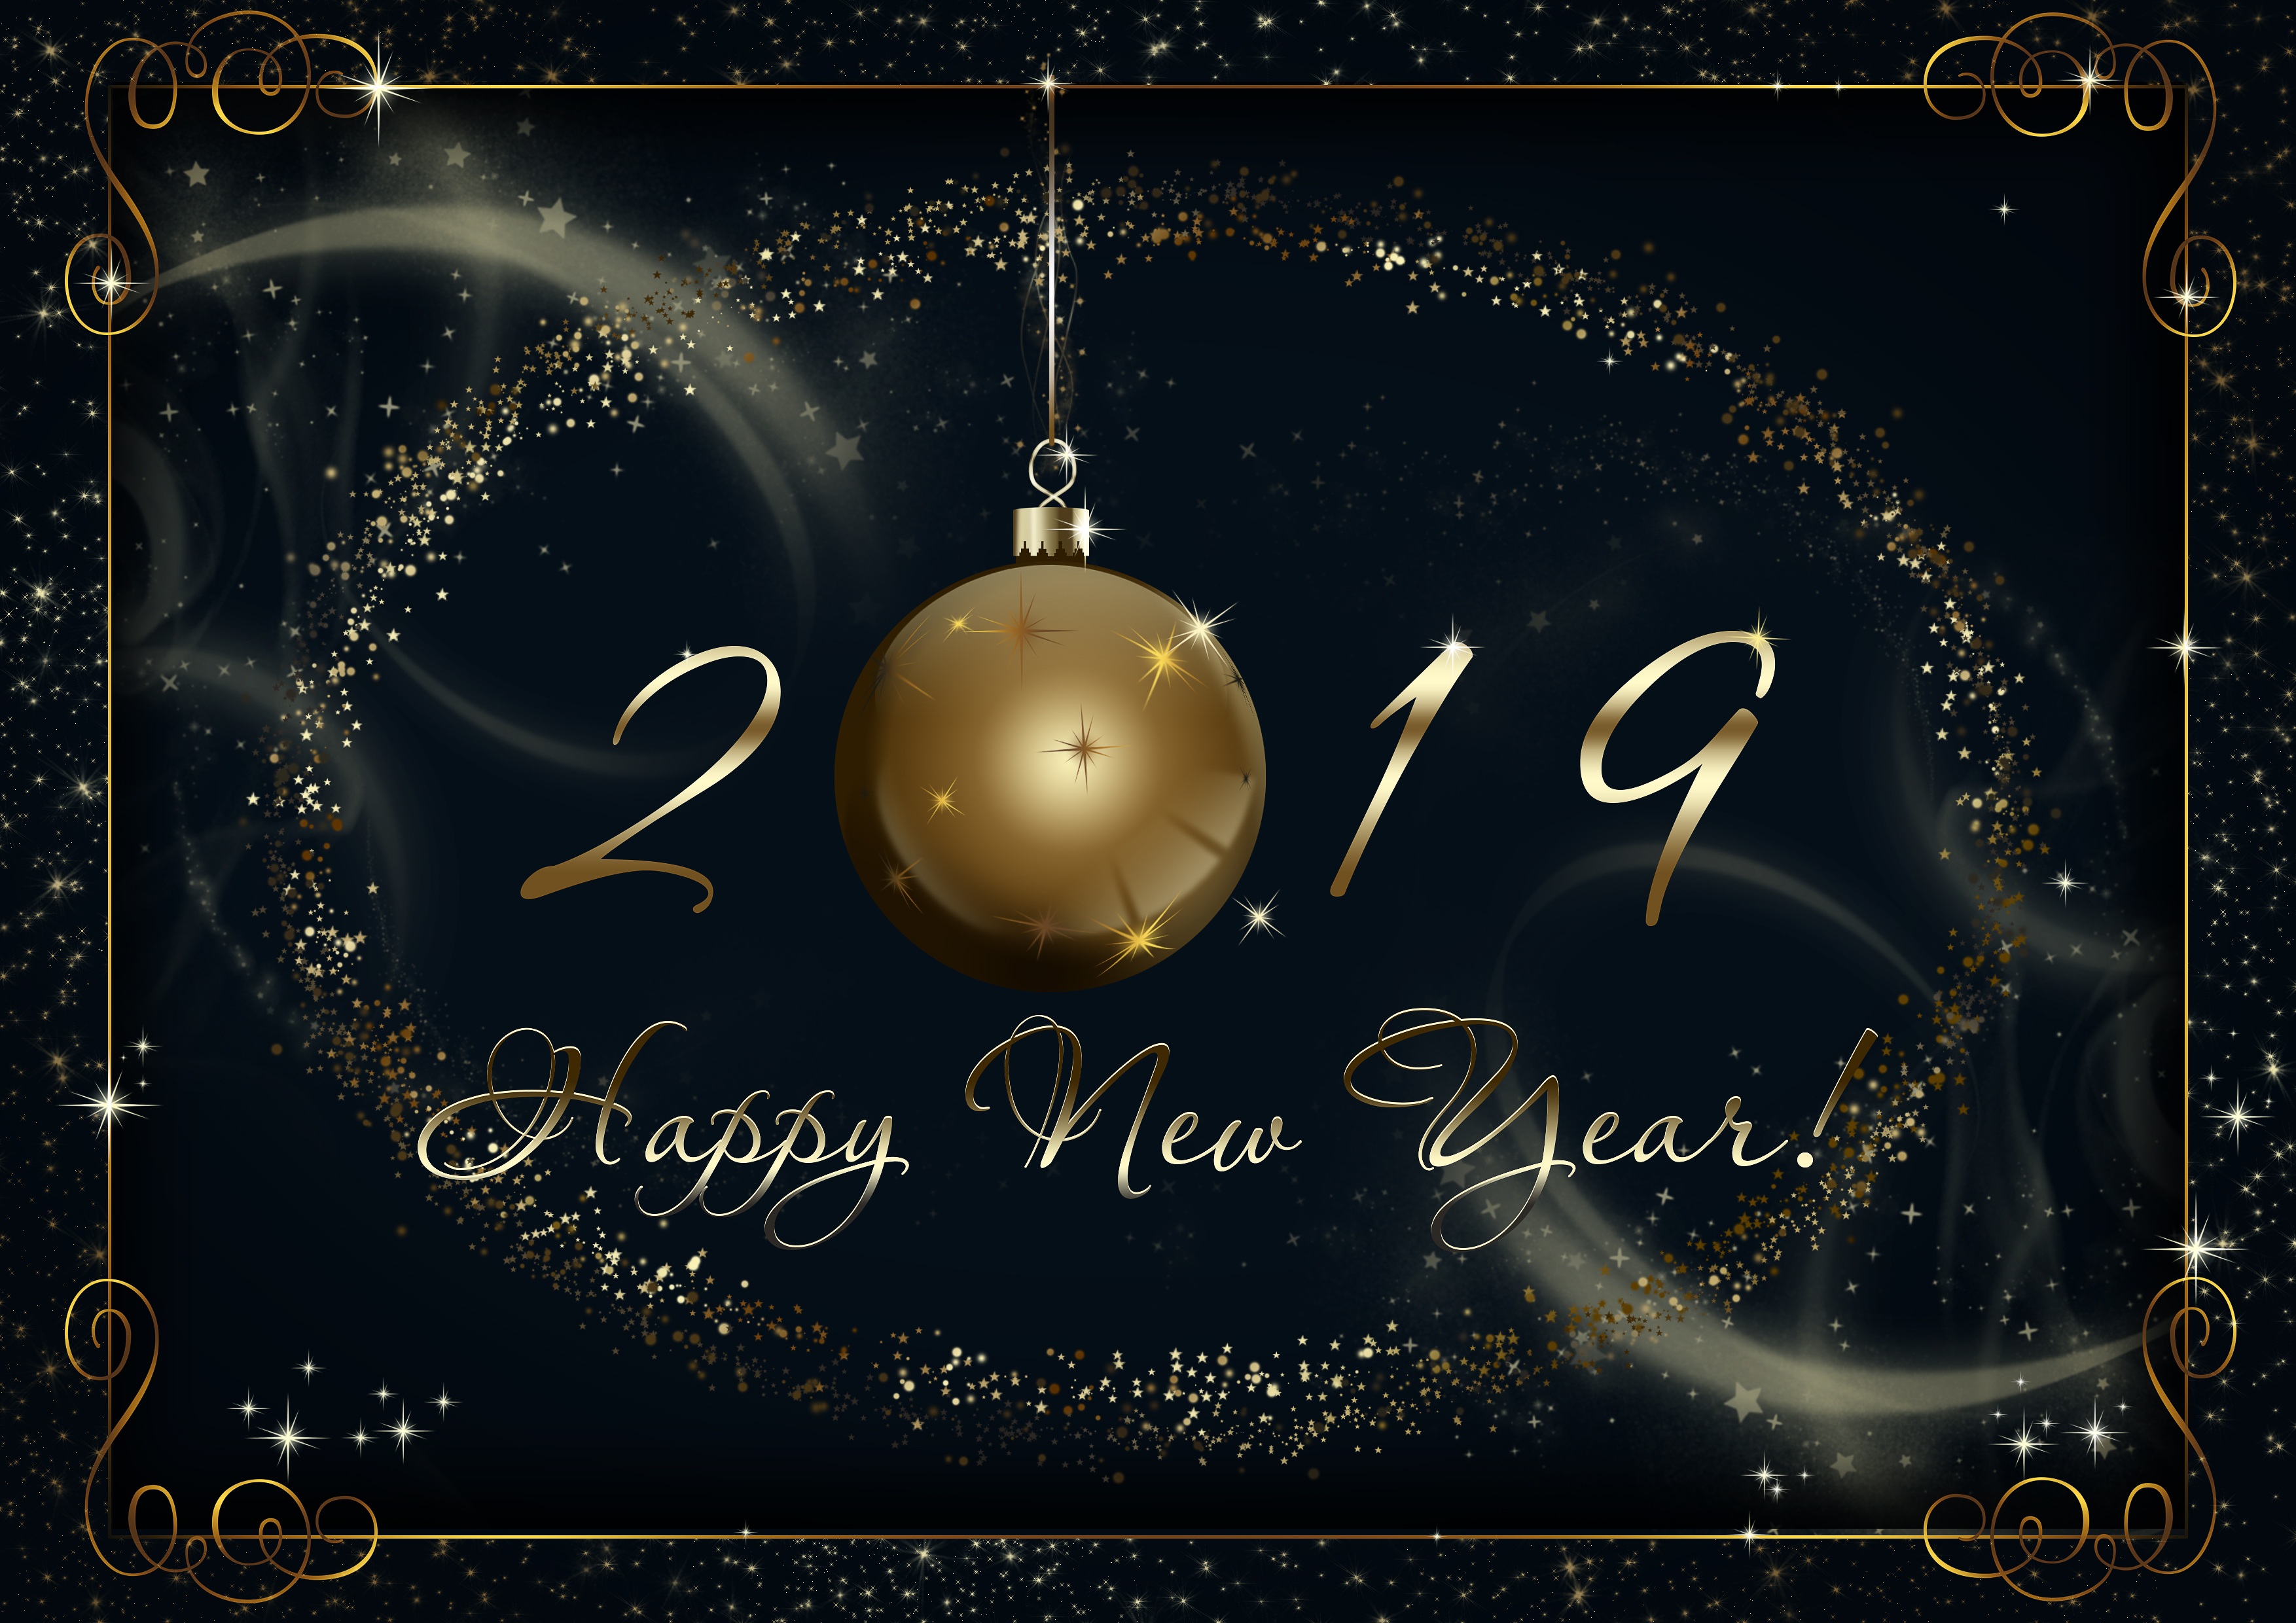 Christmas date. Happy New year открытки. Новый год 2019. Обложка для поздравления с новым годом. С новым годом по английски.